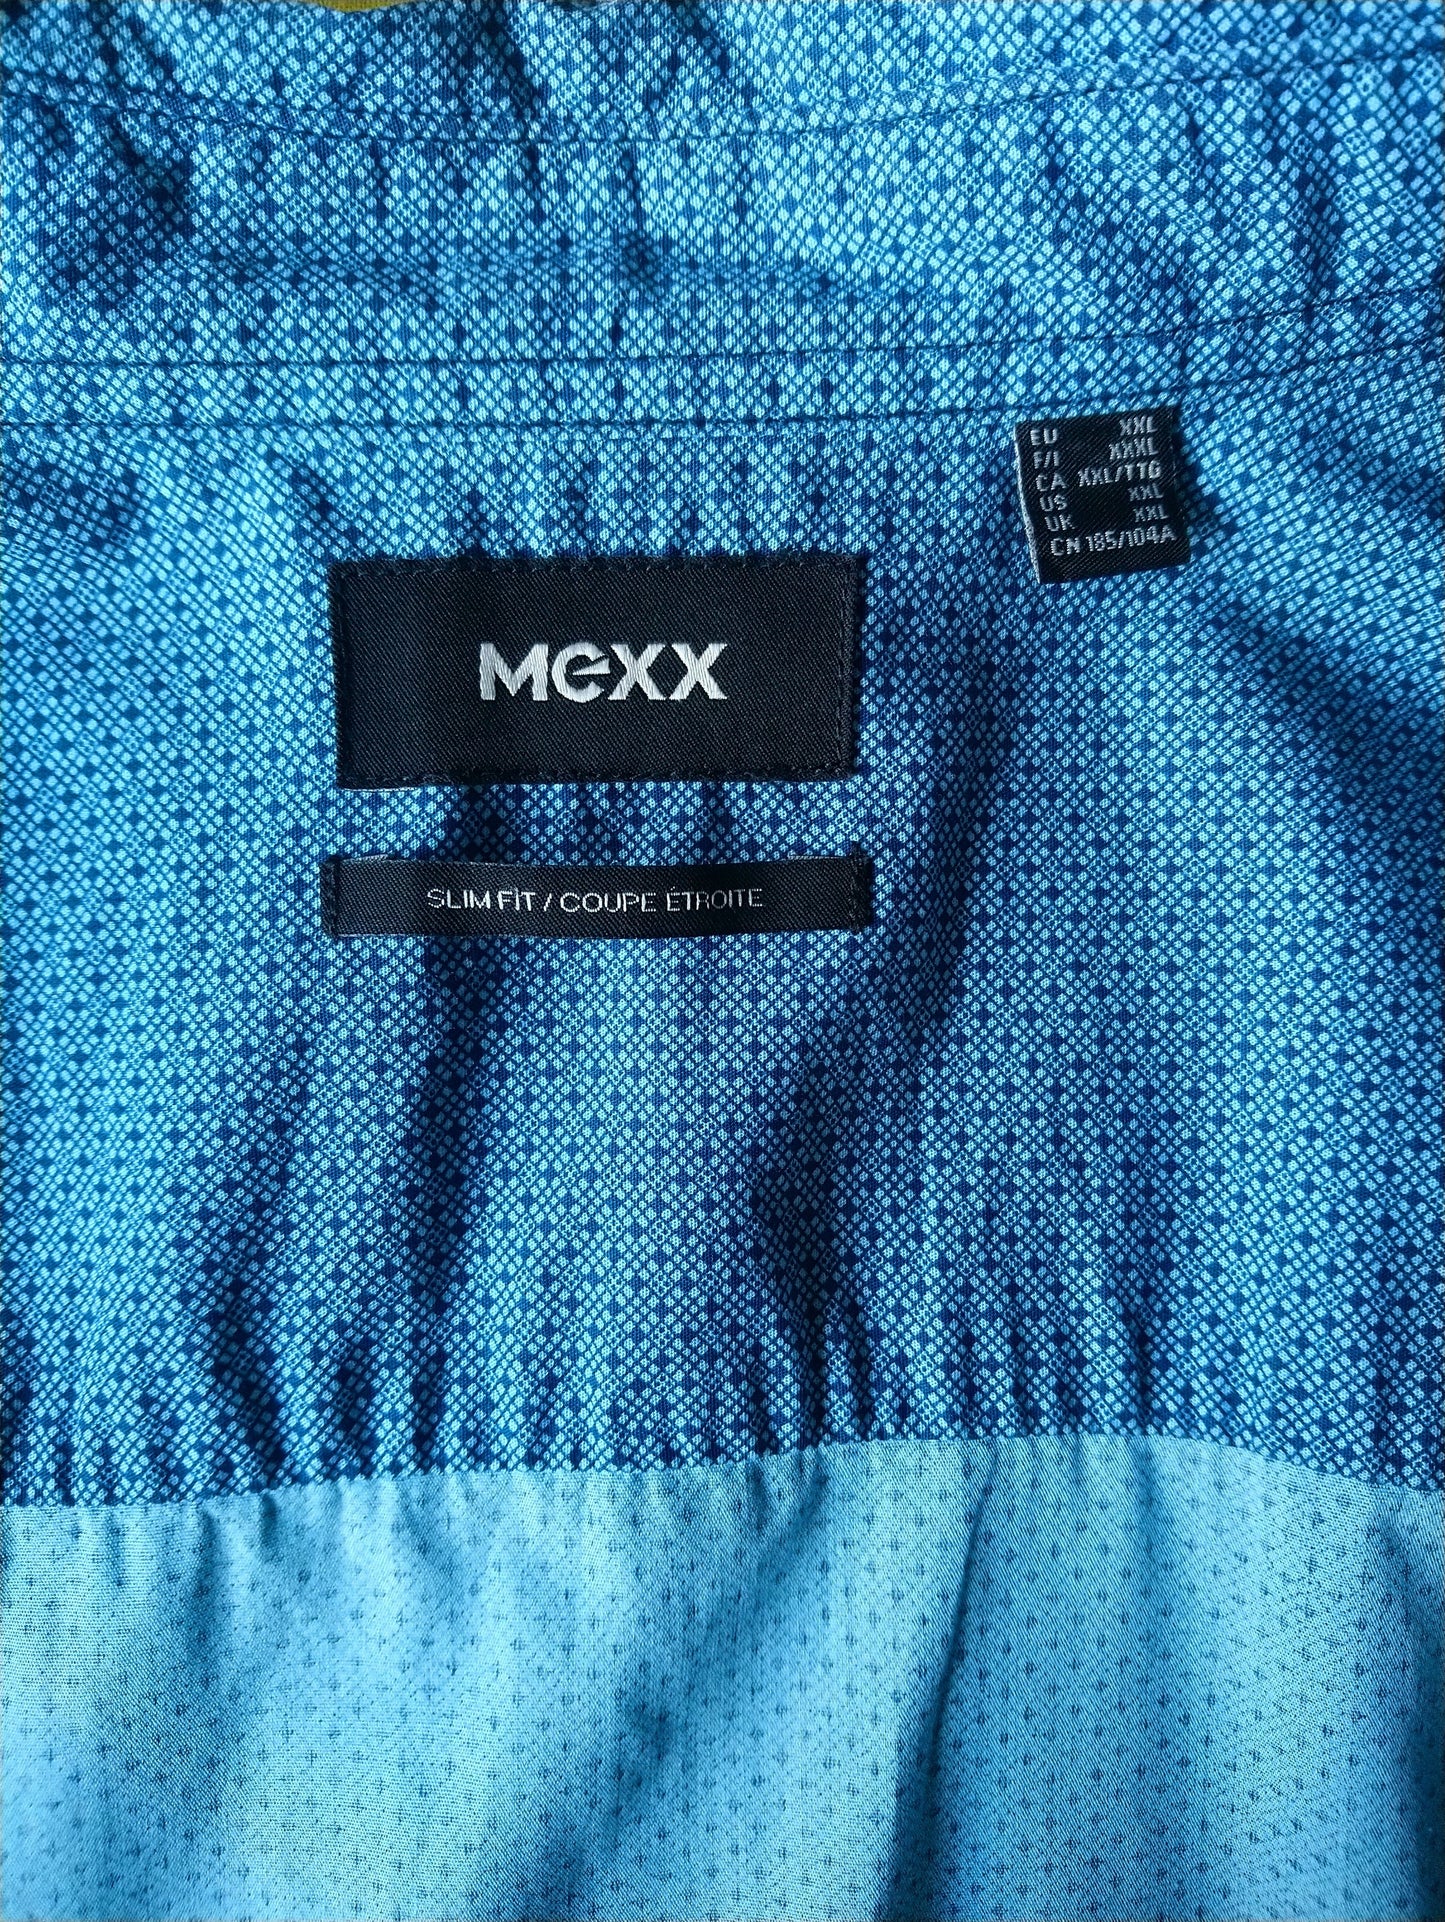 Mexx shirt. Green blue print. Size XXL / 2XL. Slim fit.